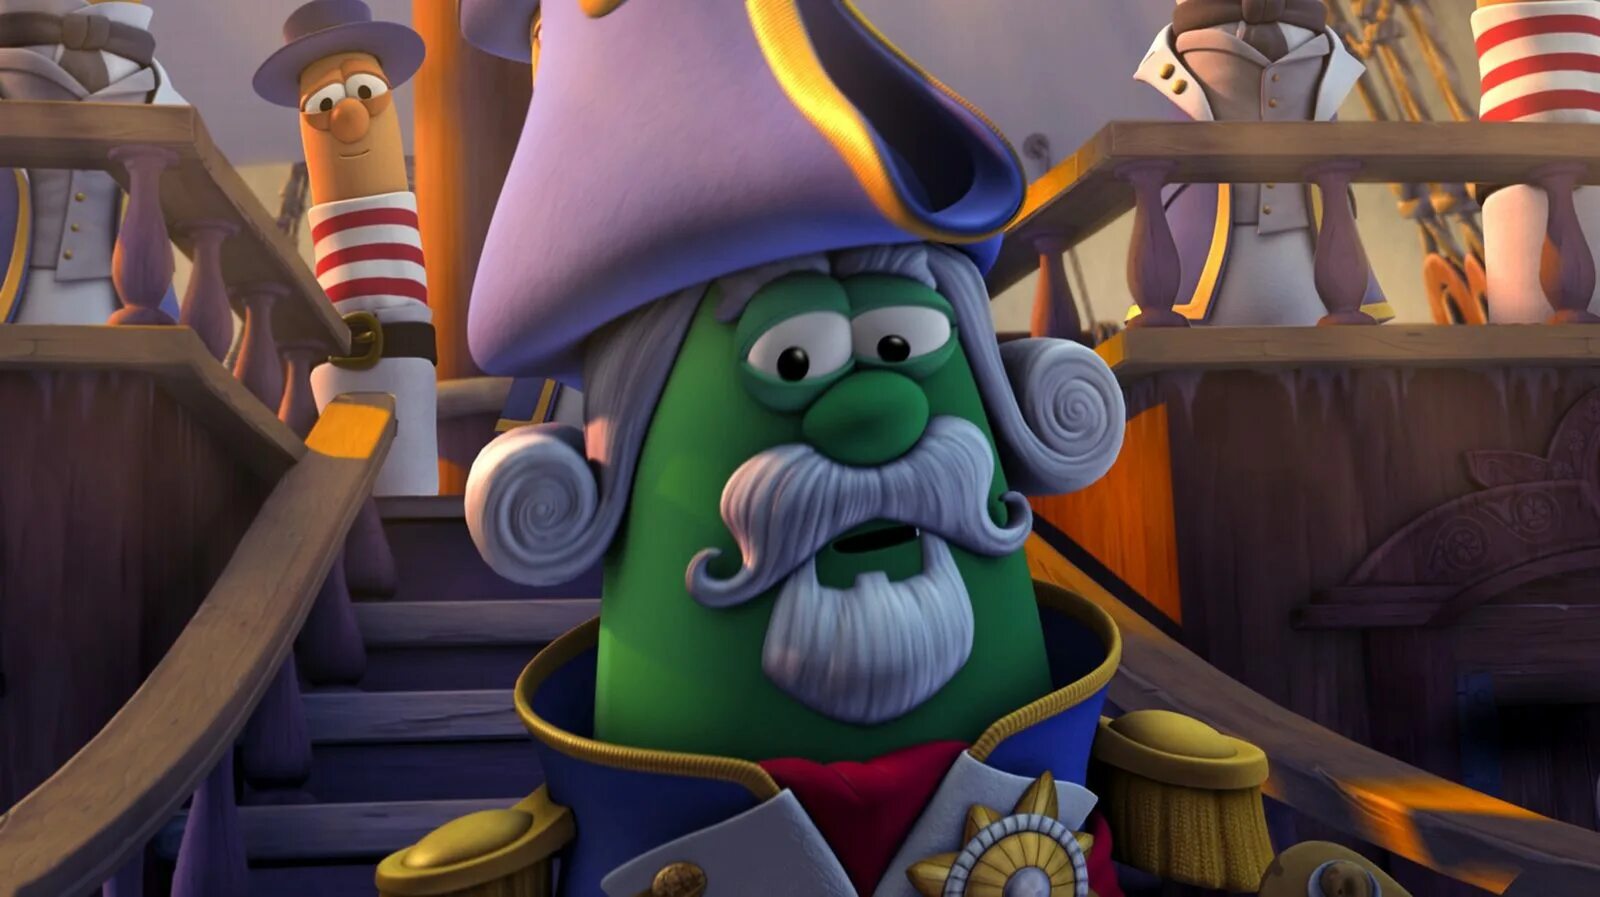 Приключения пиратов в стране овощей 2. Veggietales Jonah. Приключения пиратов в стране овощей 2 (2008). Veggietales игра пираты. Приключенческие пираты